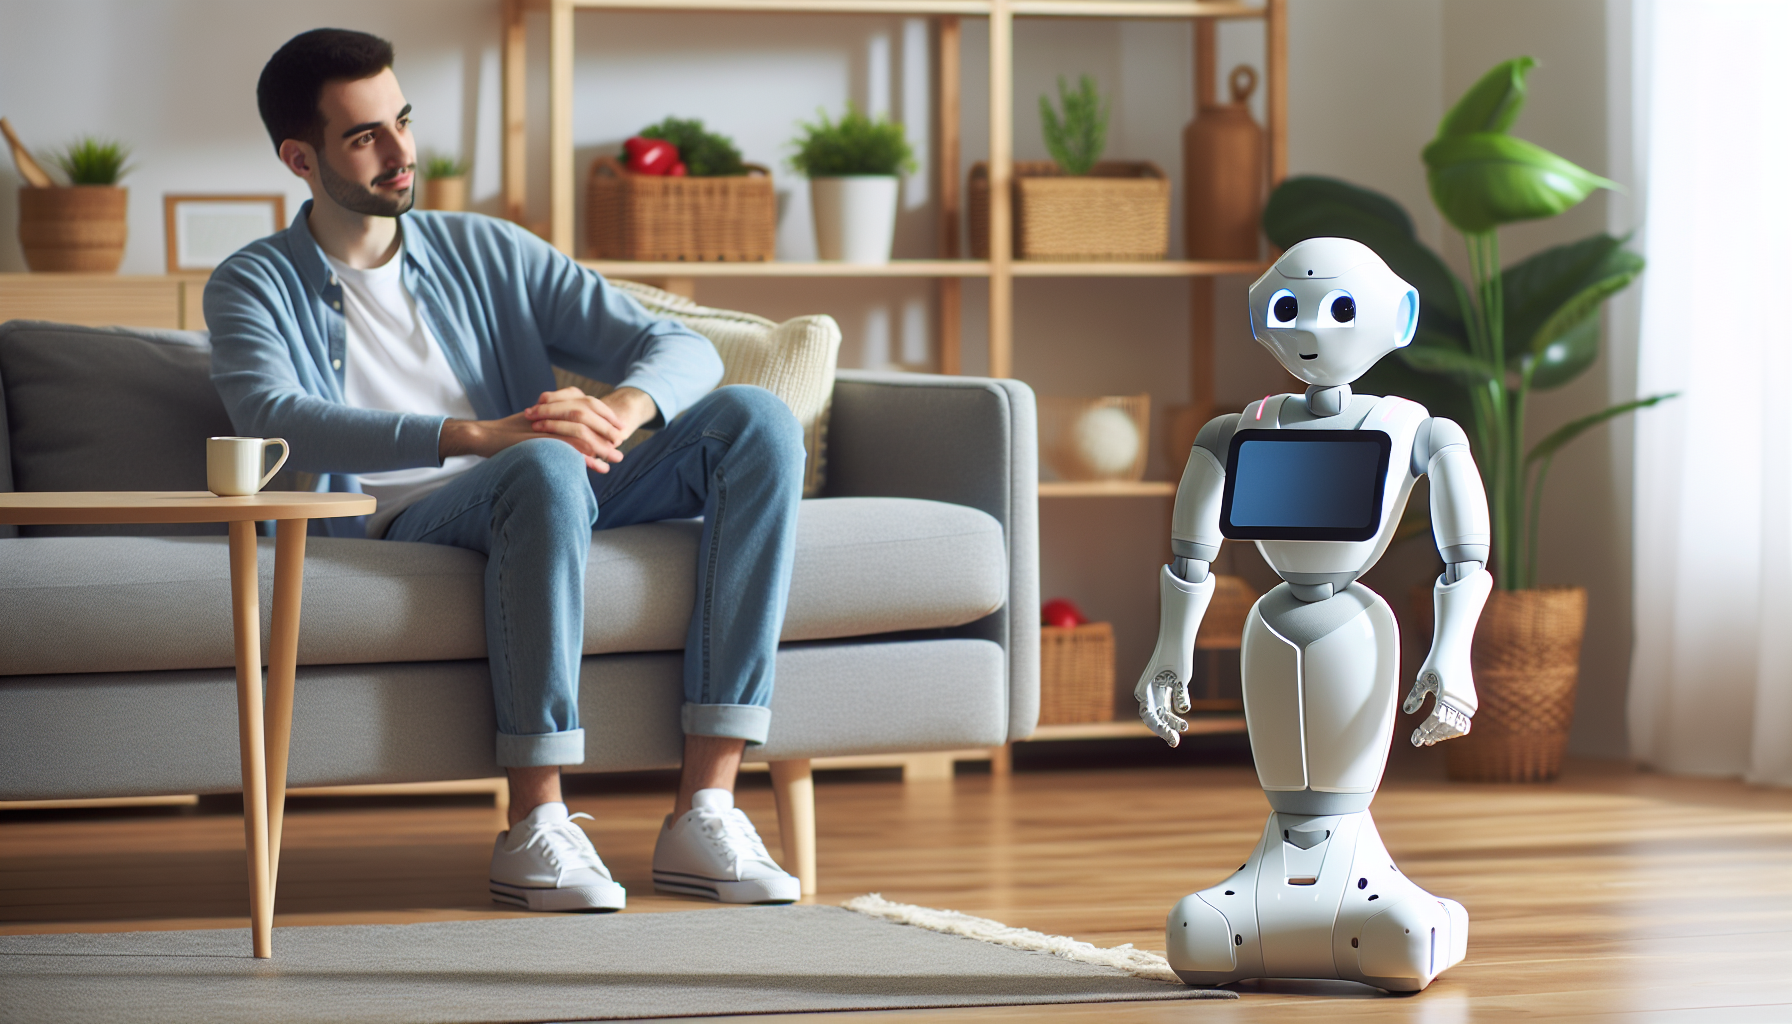 Descubra todo sobre pepper, el robot social de Softbank: sus características, su uso y su impacto en la sociedad.